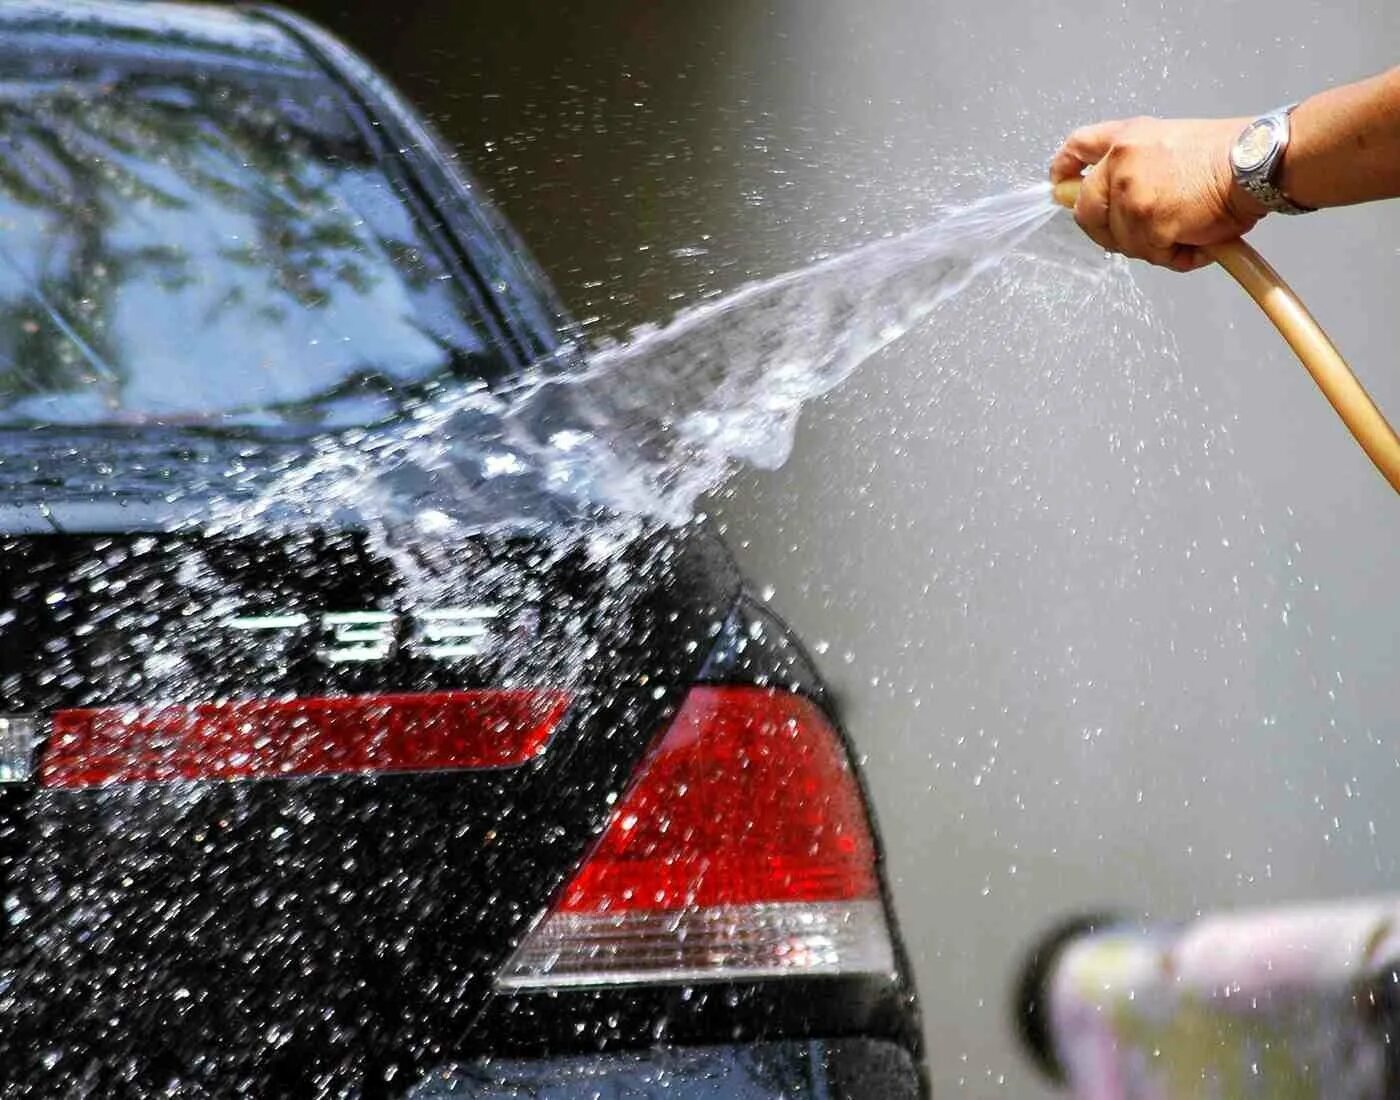 Можно мыть машину на своем участке. Мойка автомобиля. Мытье машины. Автомобиль автомойка. Машина в воде мойка.